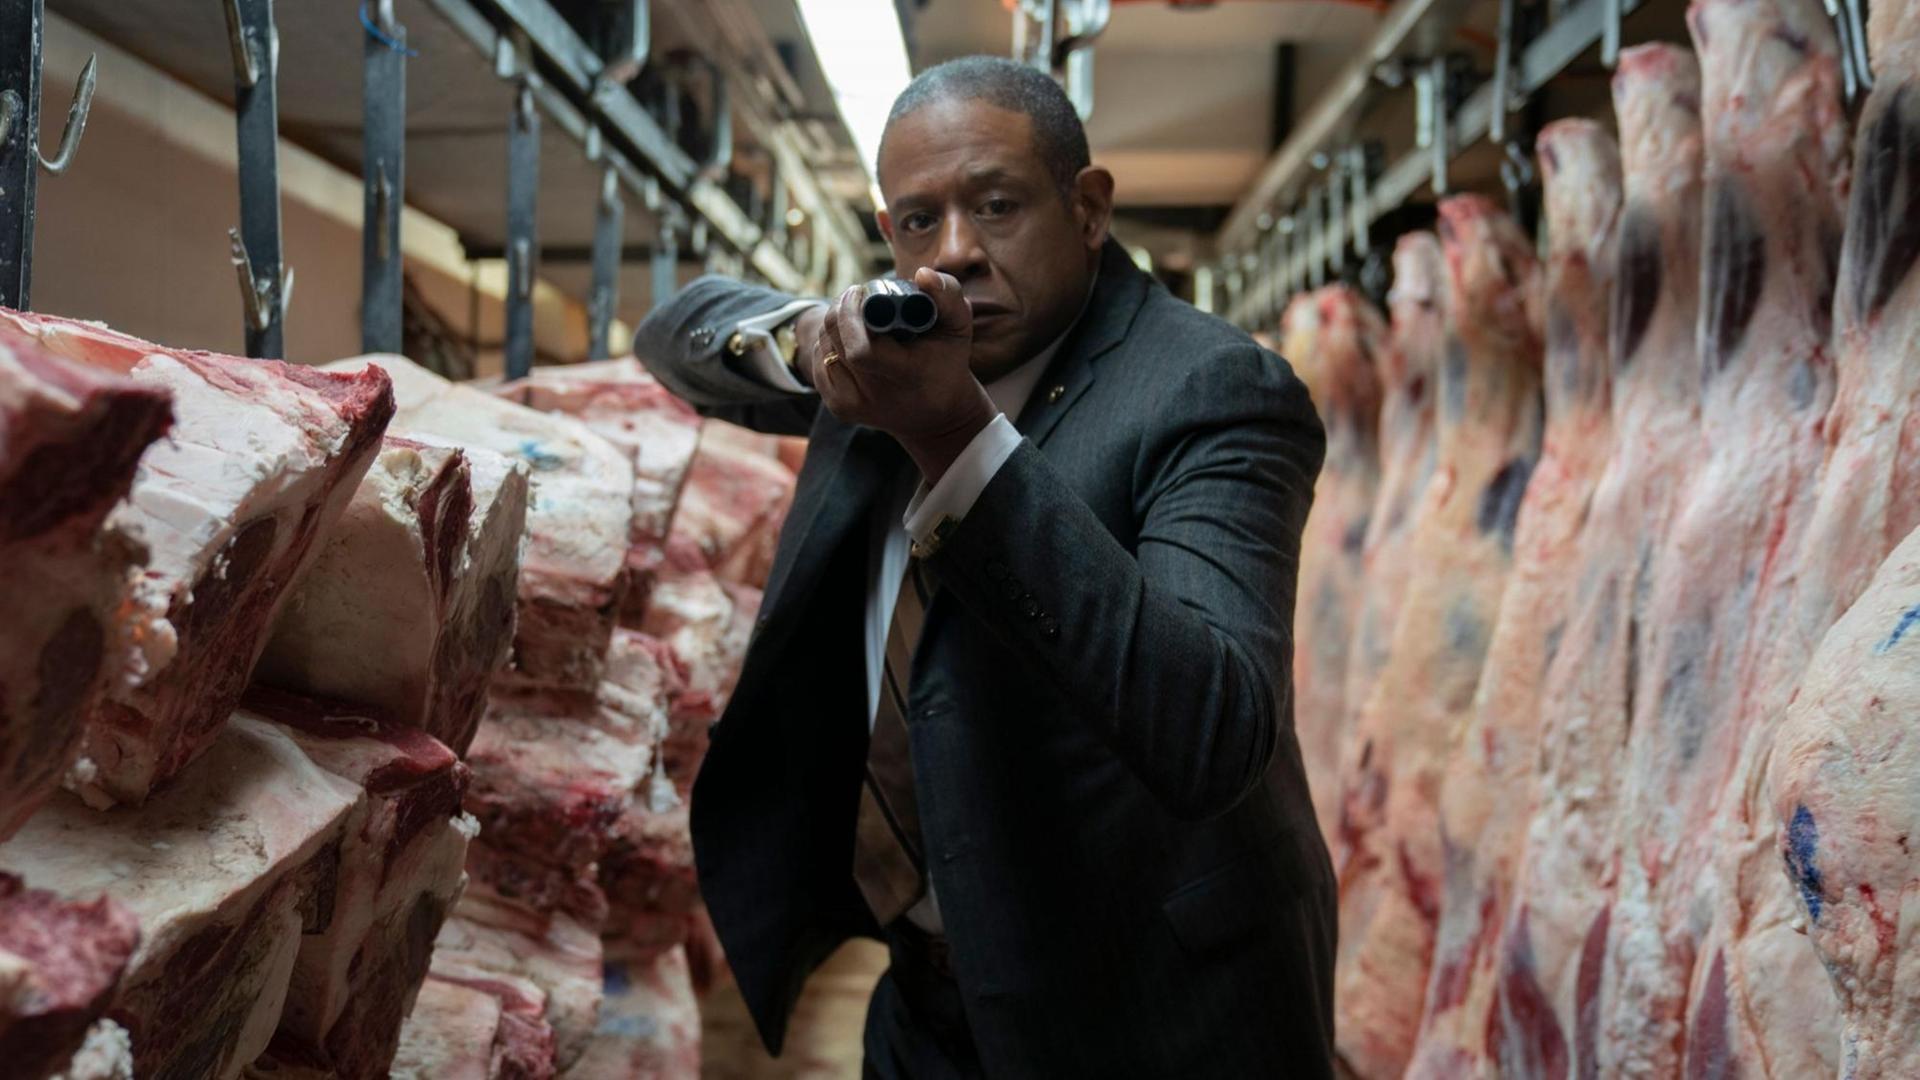 Szene aus der Serie "Godfather of Harlem": Forest Whitaker (als Bumpy Johnson) steht mit angelegter Waffe in einem Schlachthaus.